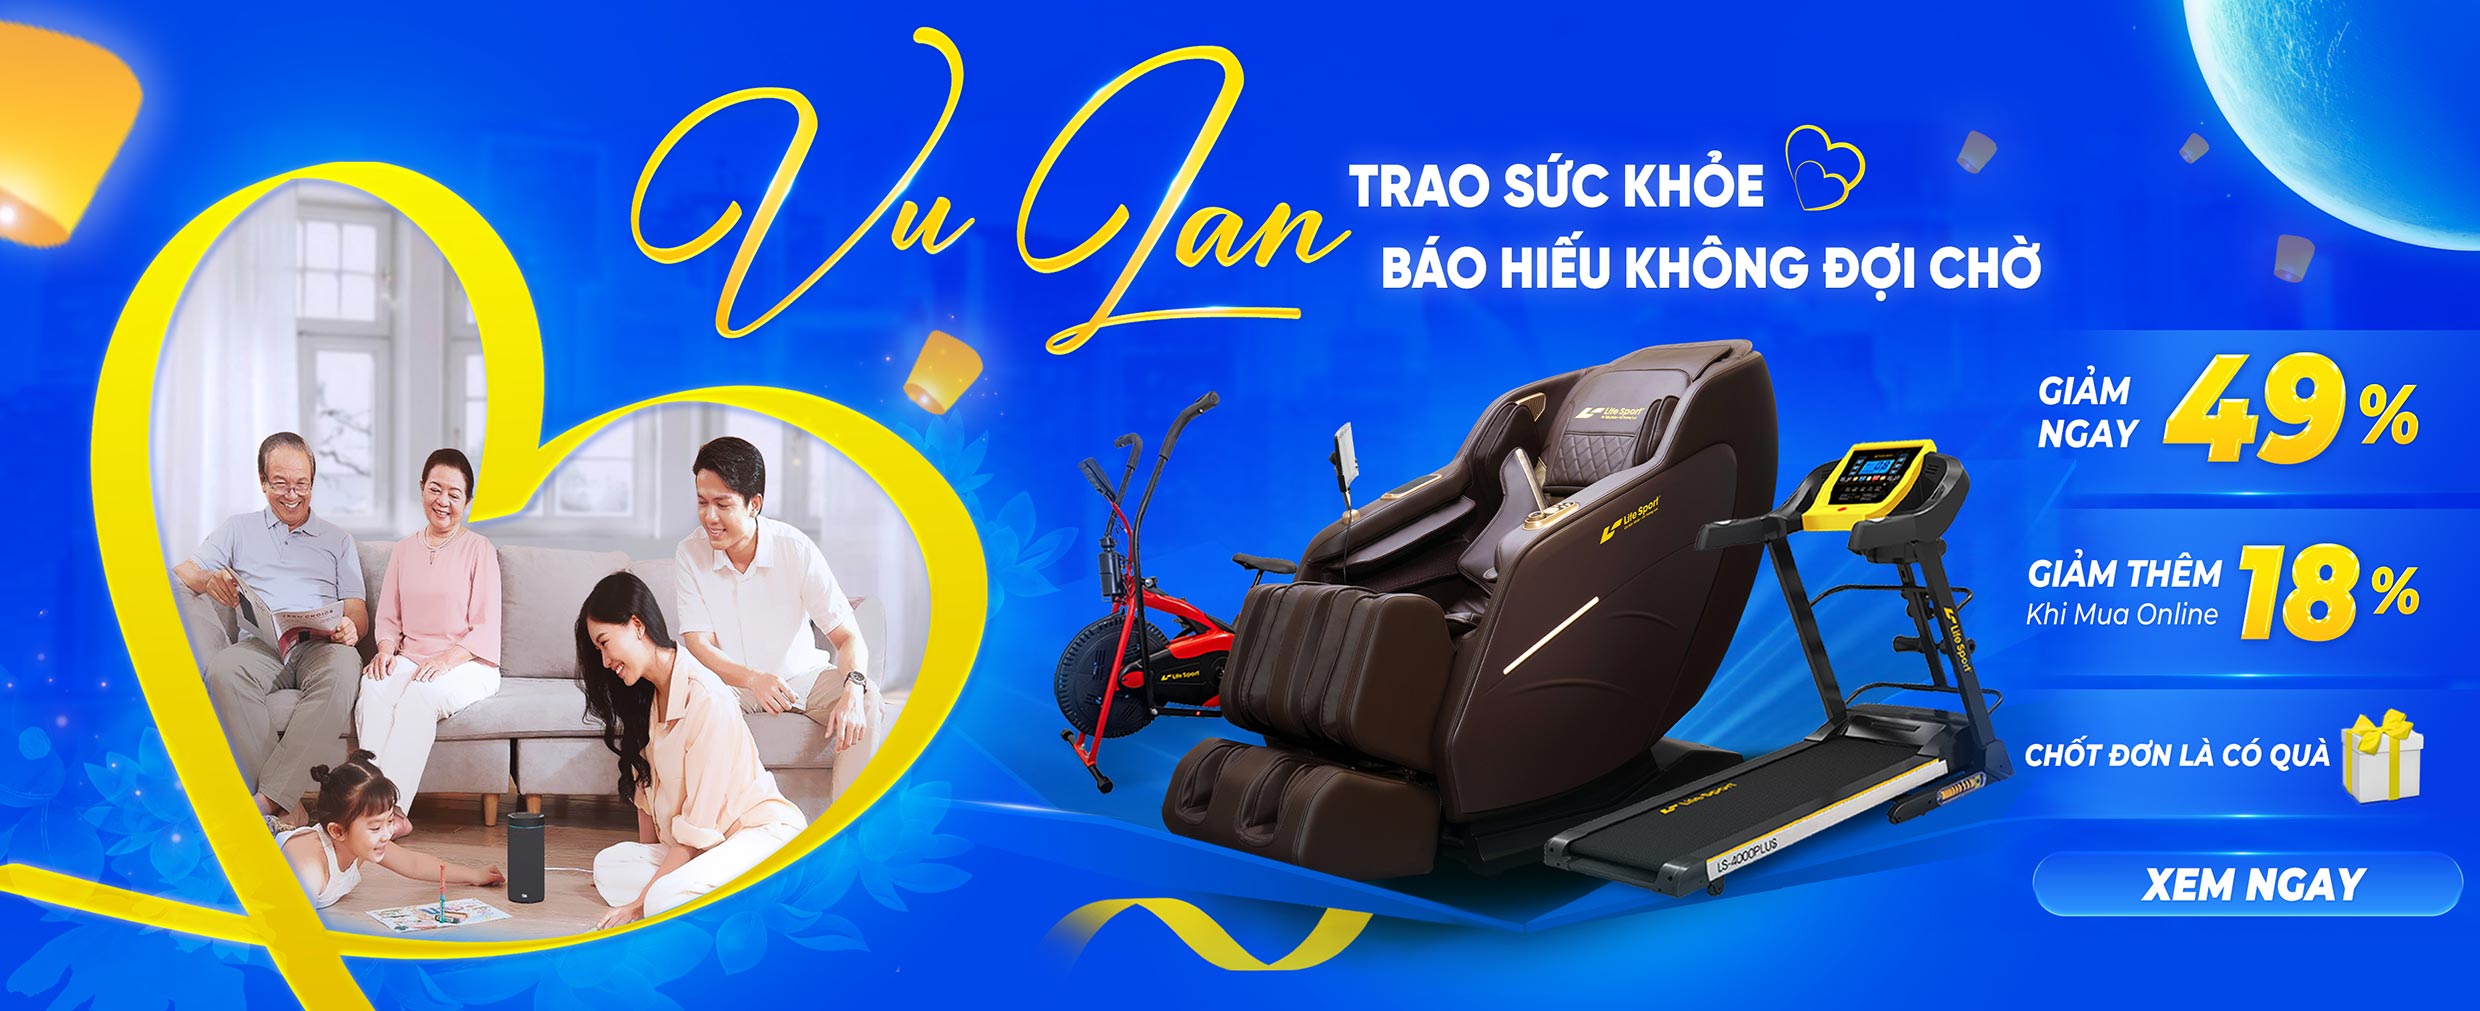 lifesport vu lan trao suc khoe bao hieu khong doi cho banner